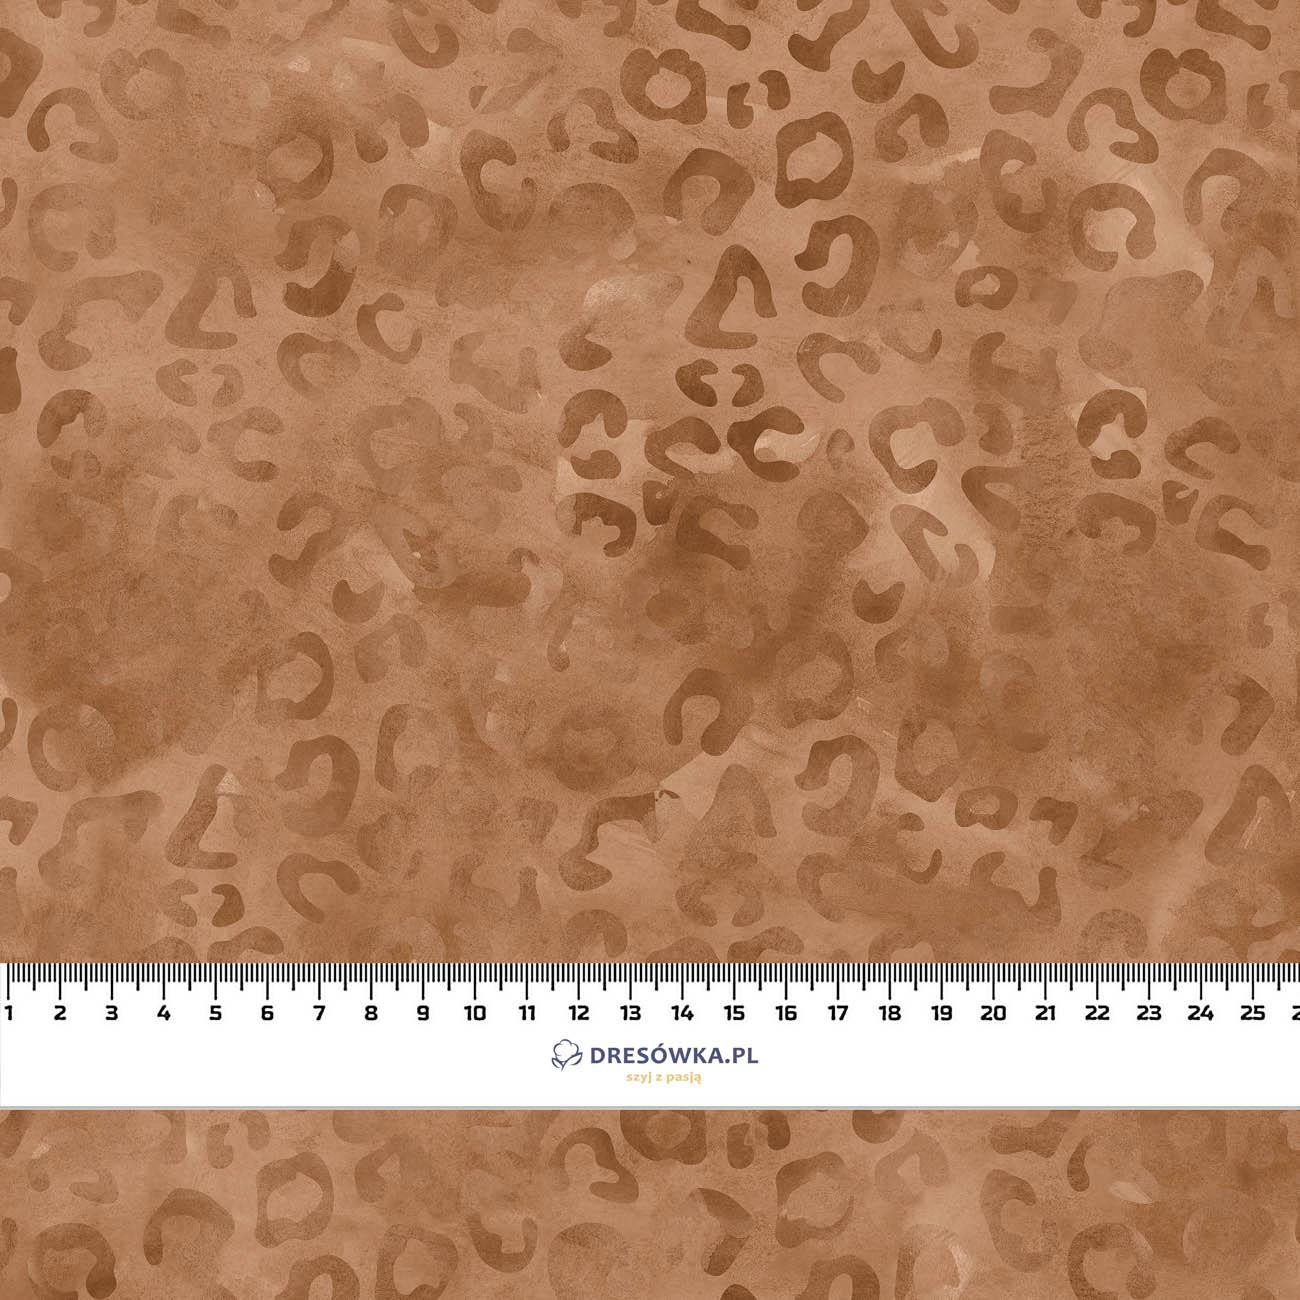 CĘTKI / brązowy (PANTERY ŚNIEŻNE) - tkanina bawełniana